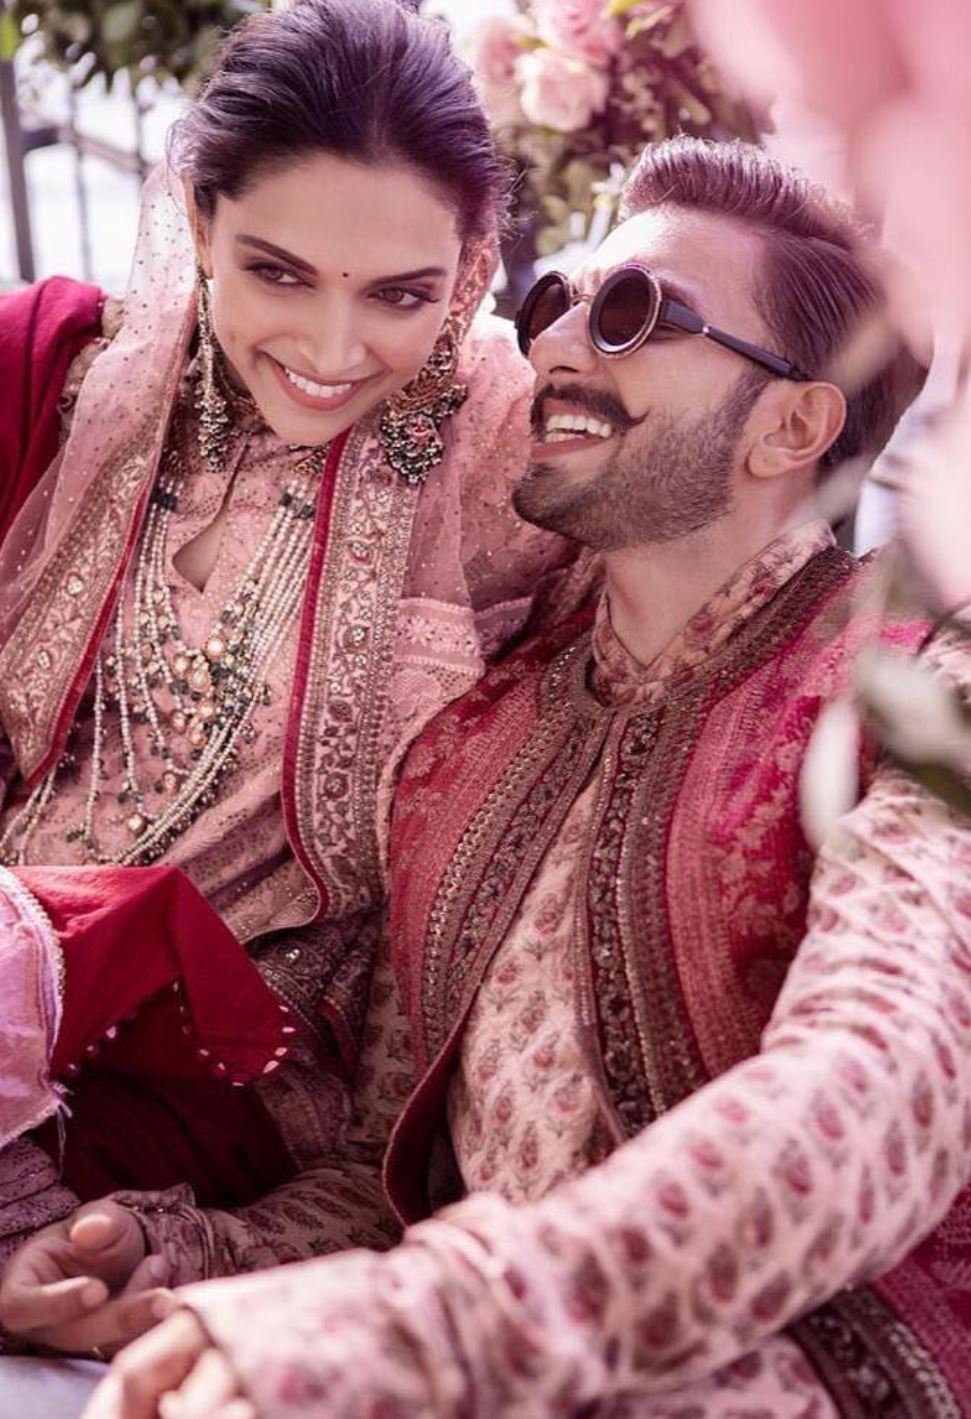 Deepika and Ranveer New Amazing Pictures of Wedding